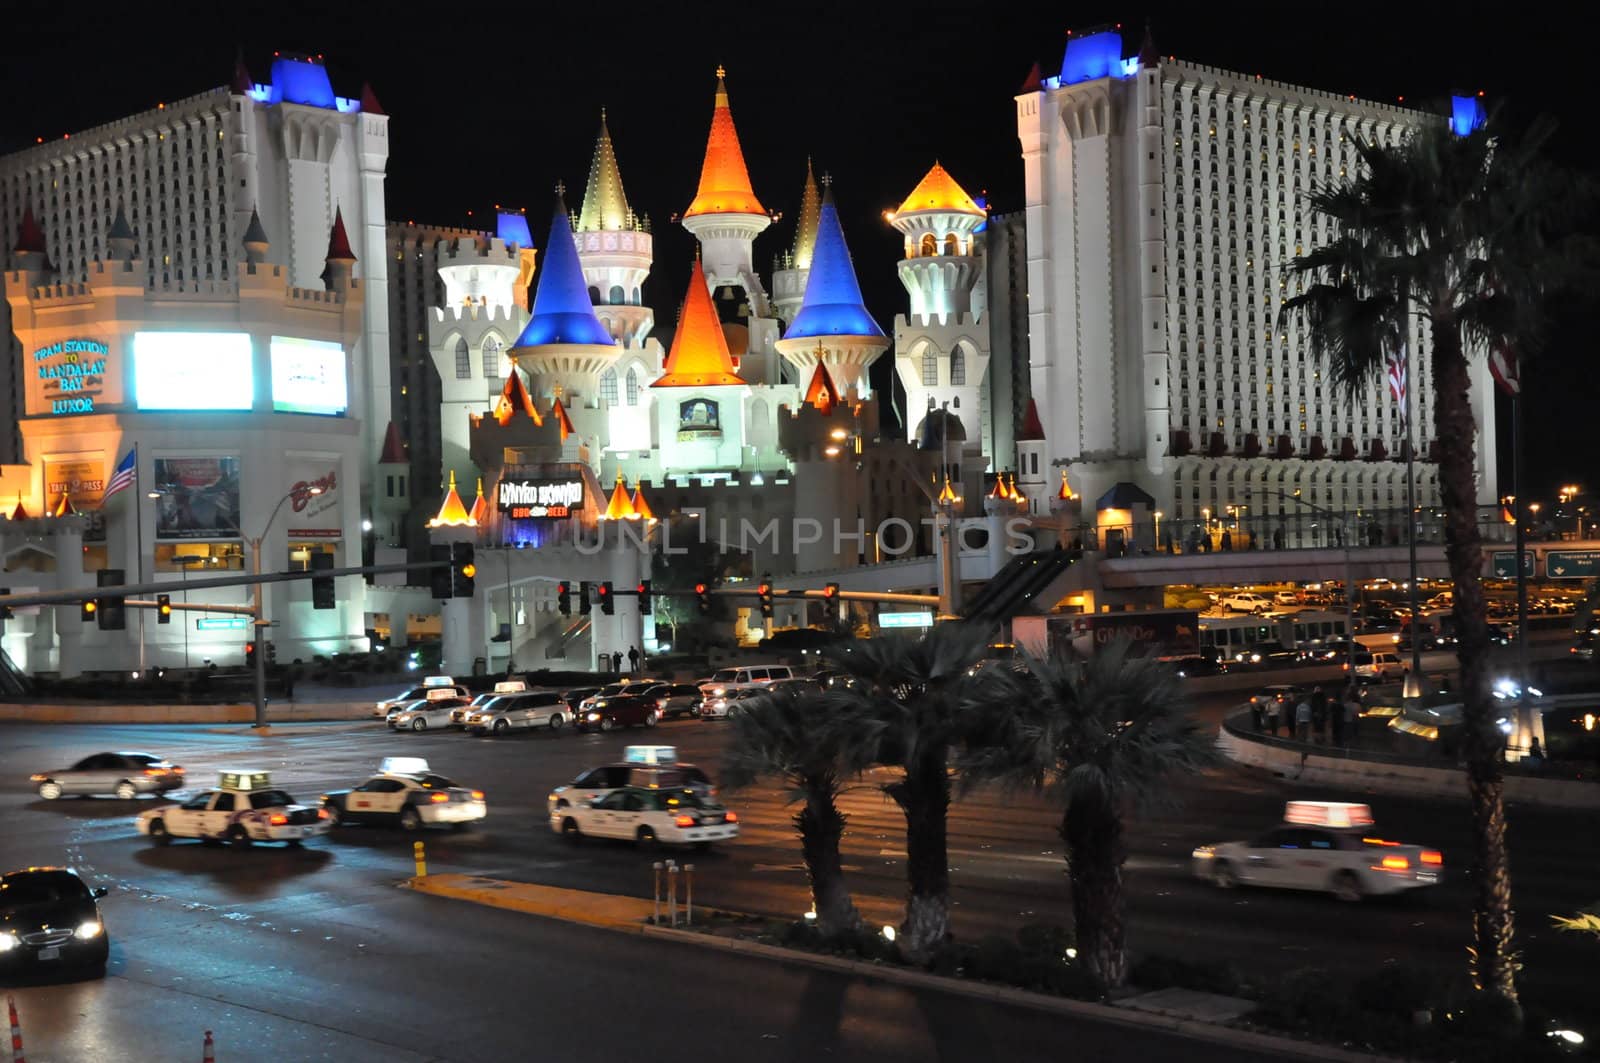 Excalibur Hotel and Casino in Las Vegas by sainaniritu